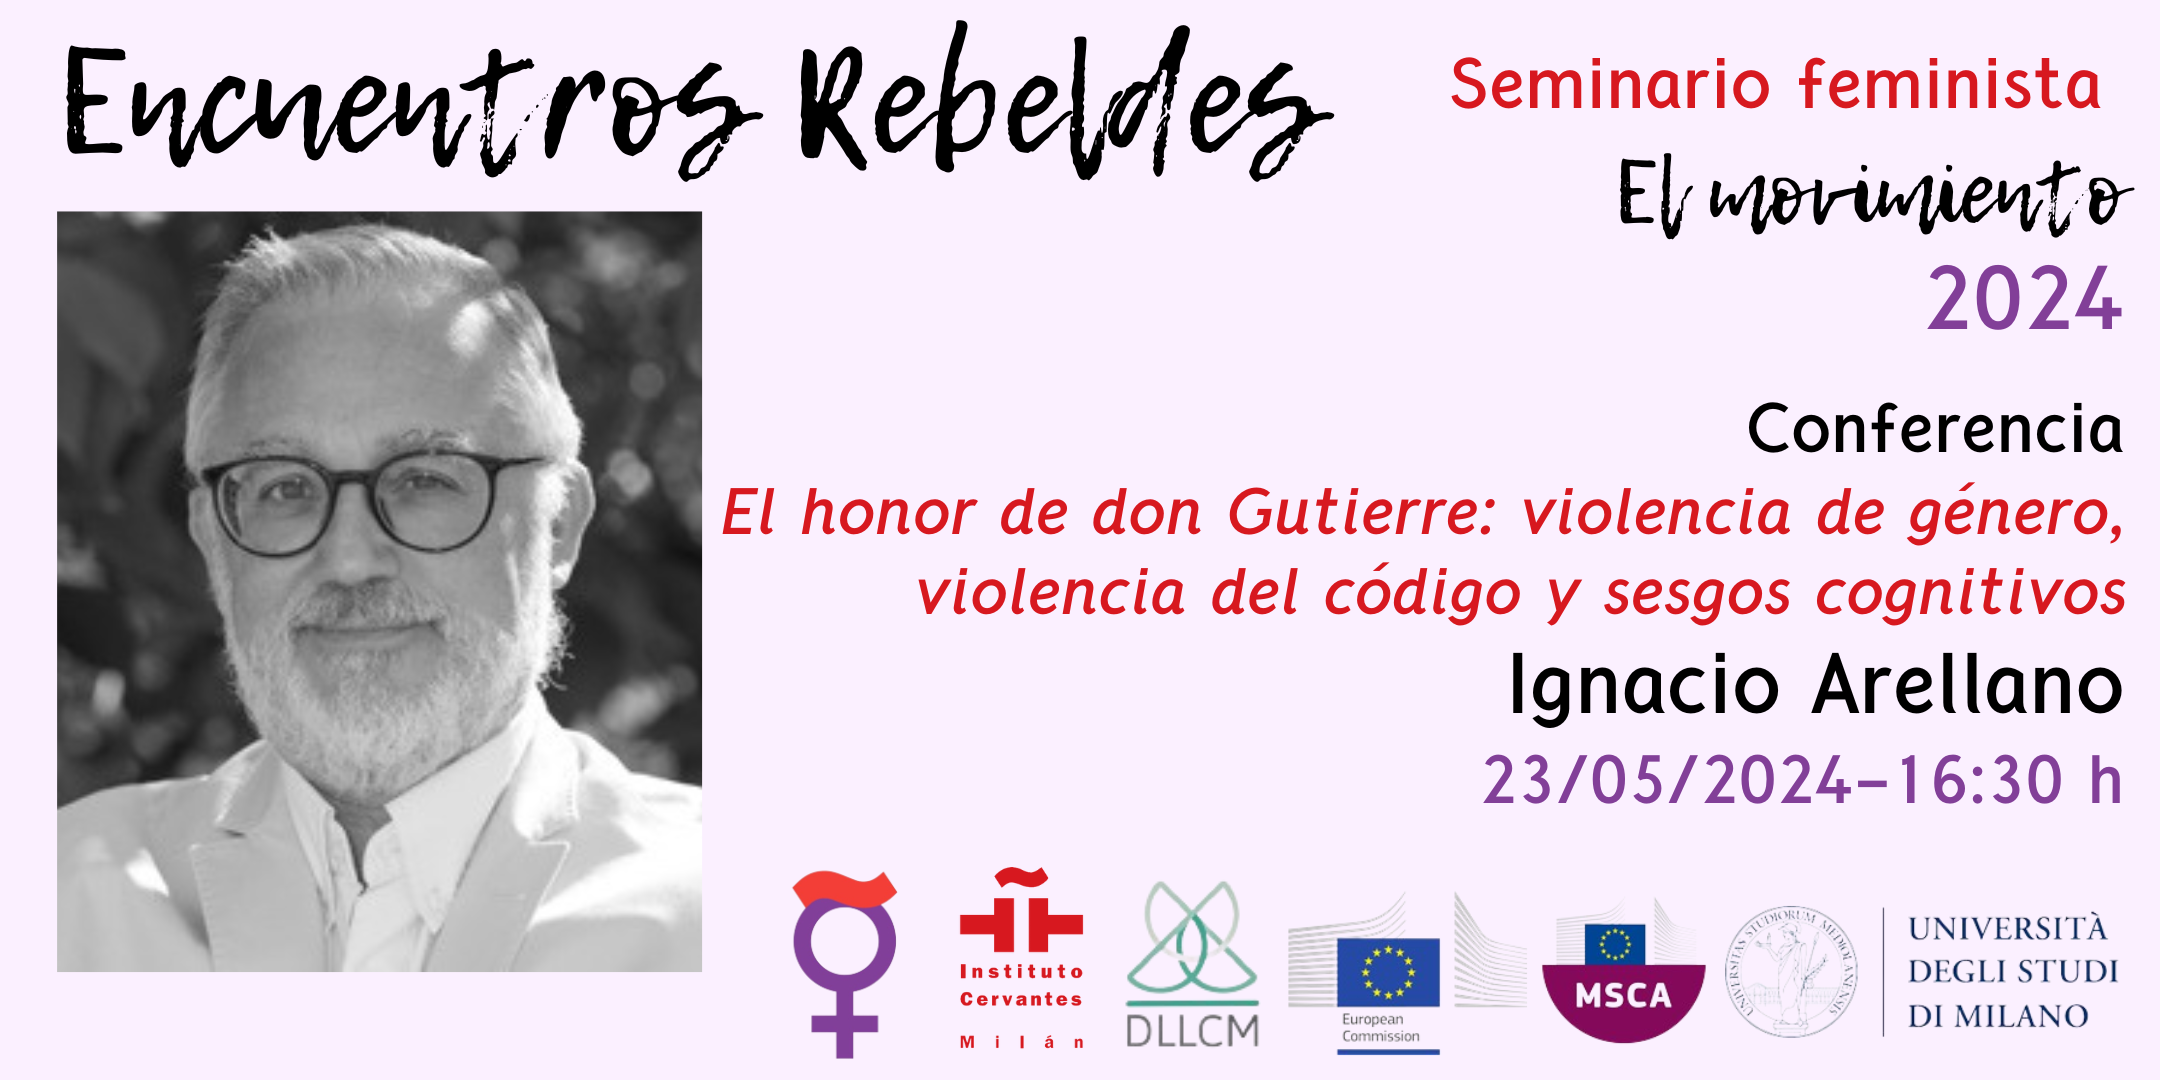 El honor de don Gutierre: violencia de género, violencia del código y sesgos cognitivos